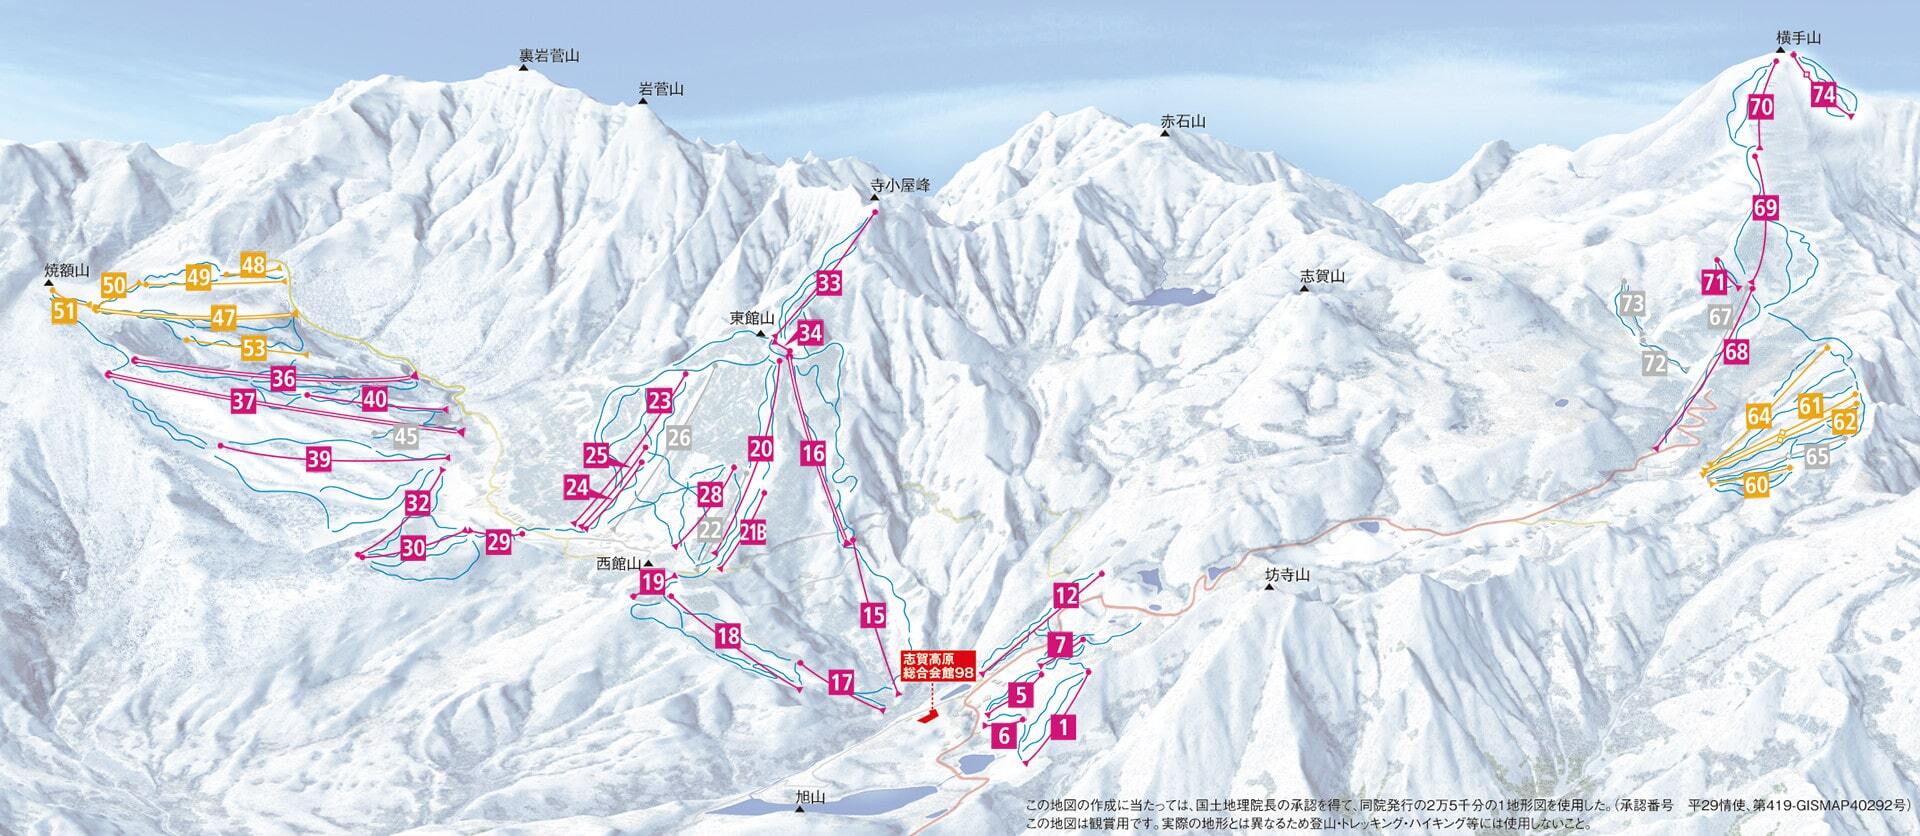 Shiga Kogen-Yakebitaiyama Piste / Trail Map